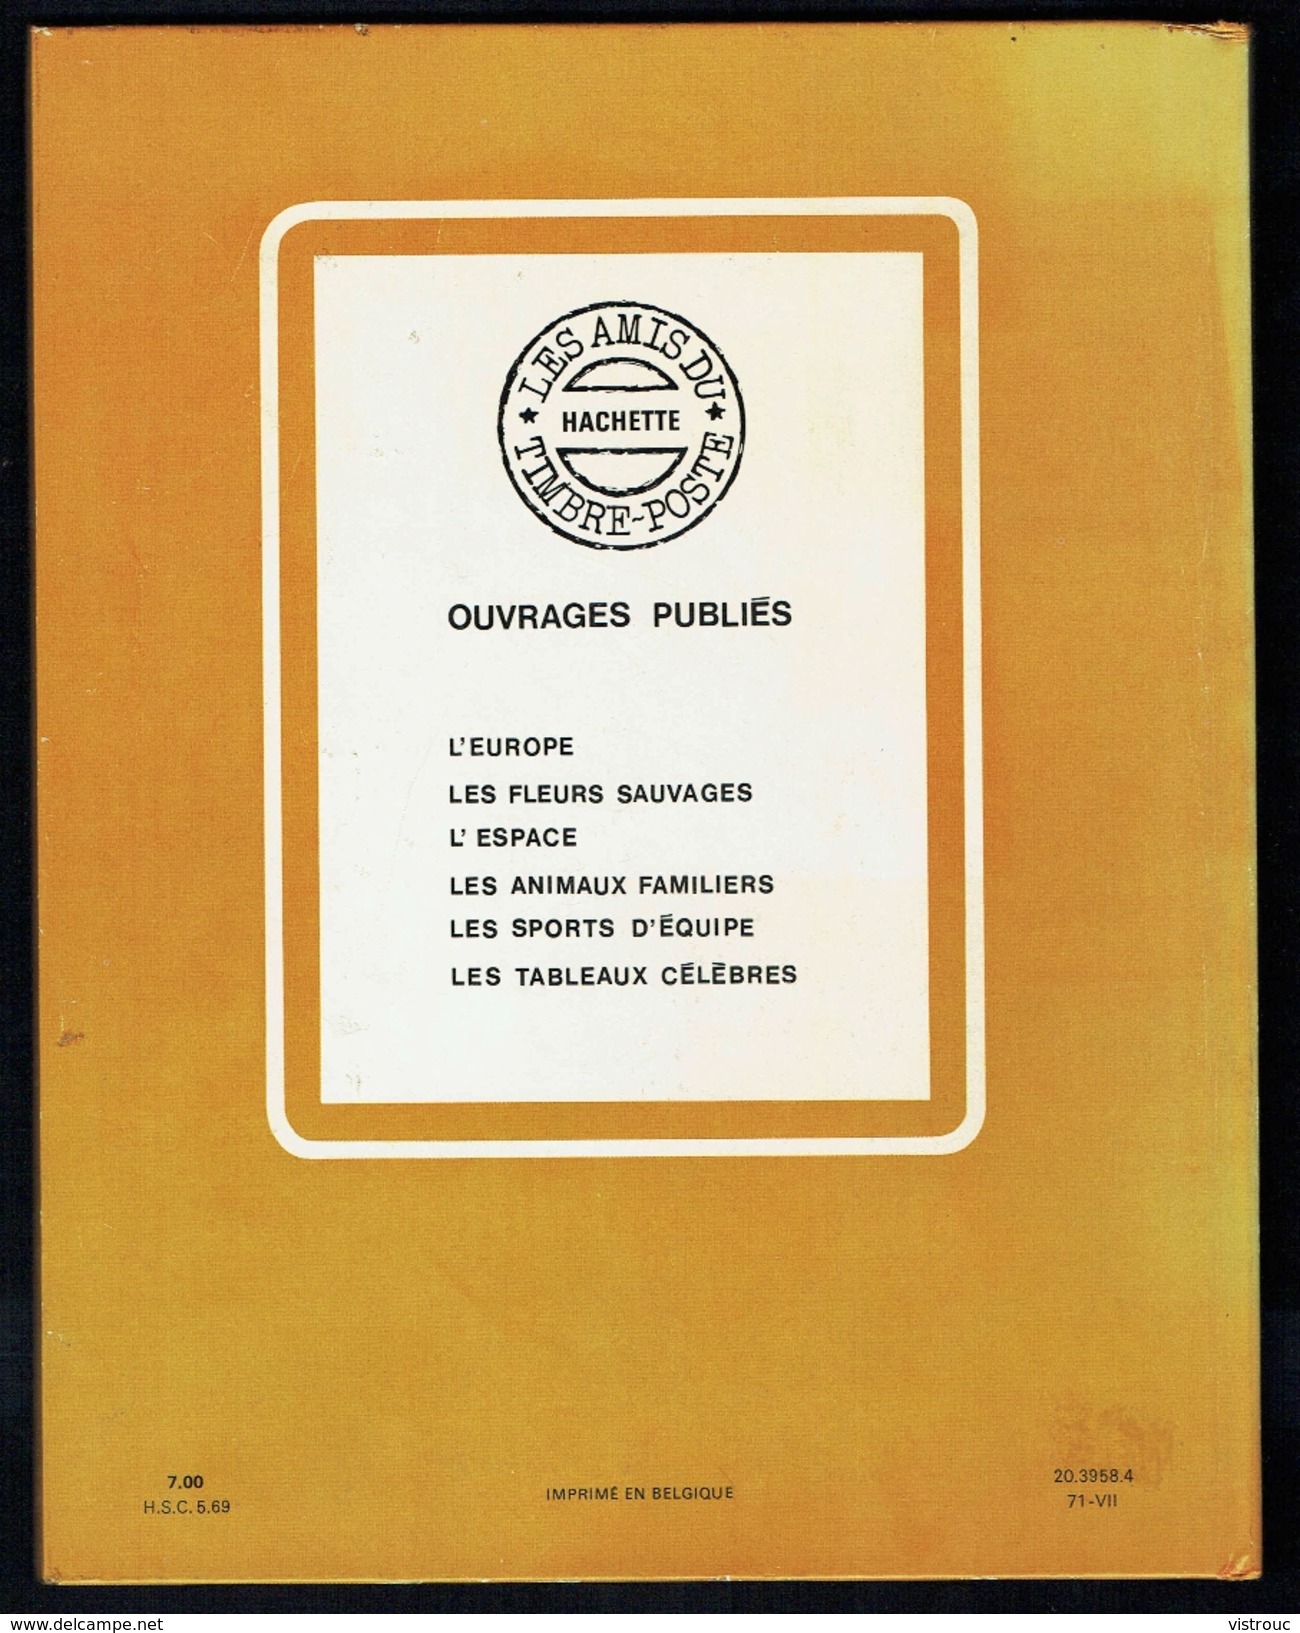 " A La Découverte Des Tableaux Célèbres Par Le Timbre-poste ", édition HACHETTE, 1971. - Thématiques